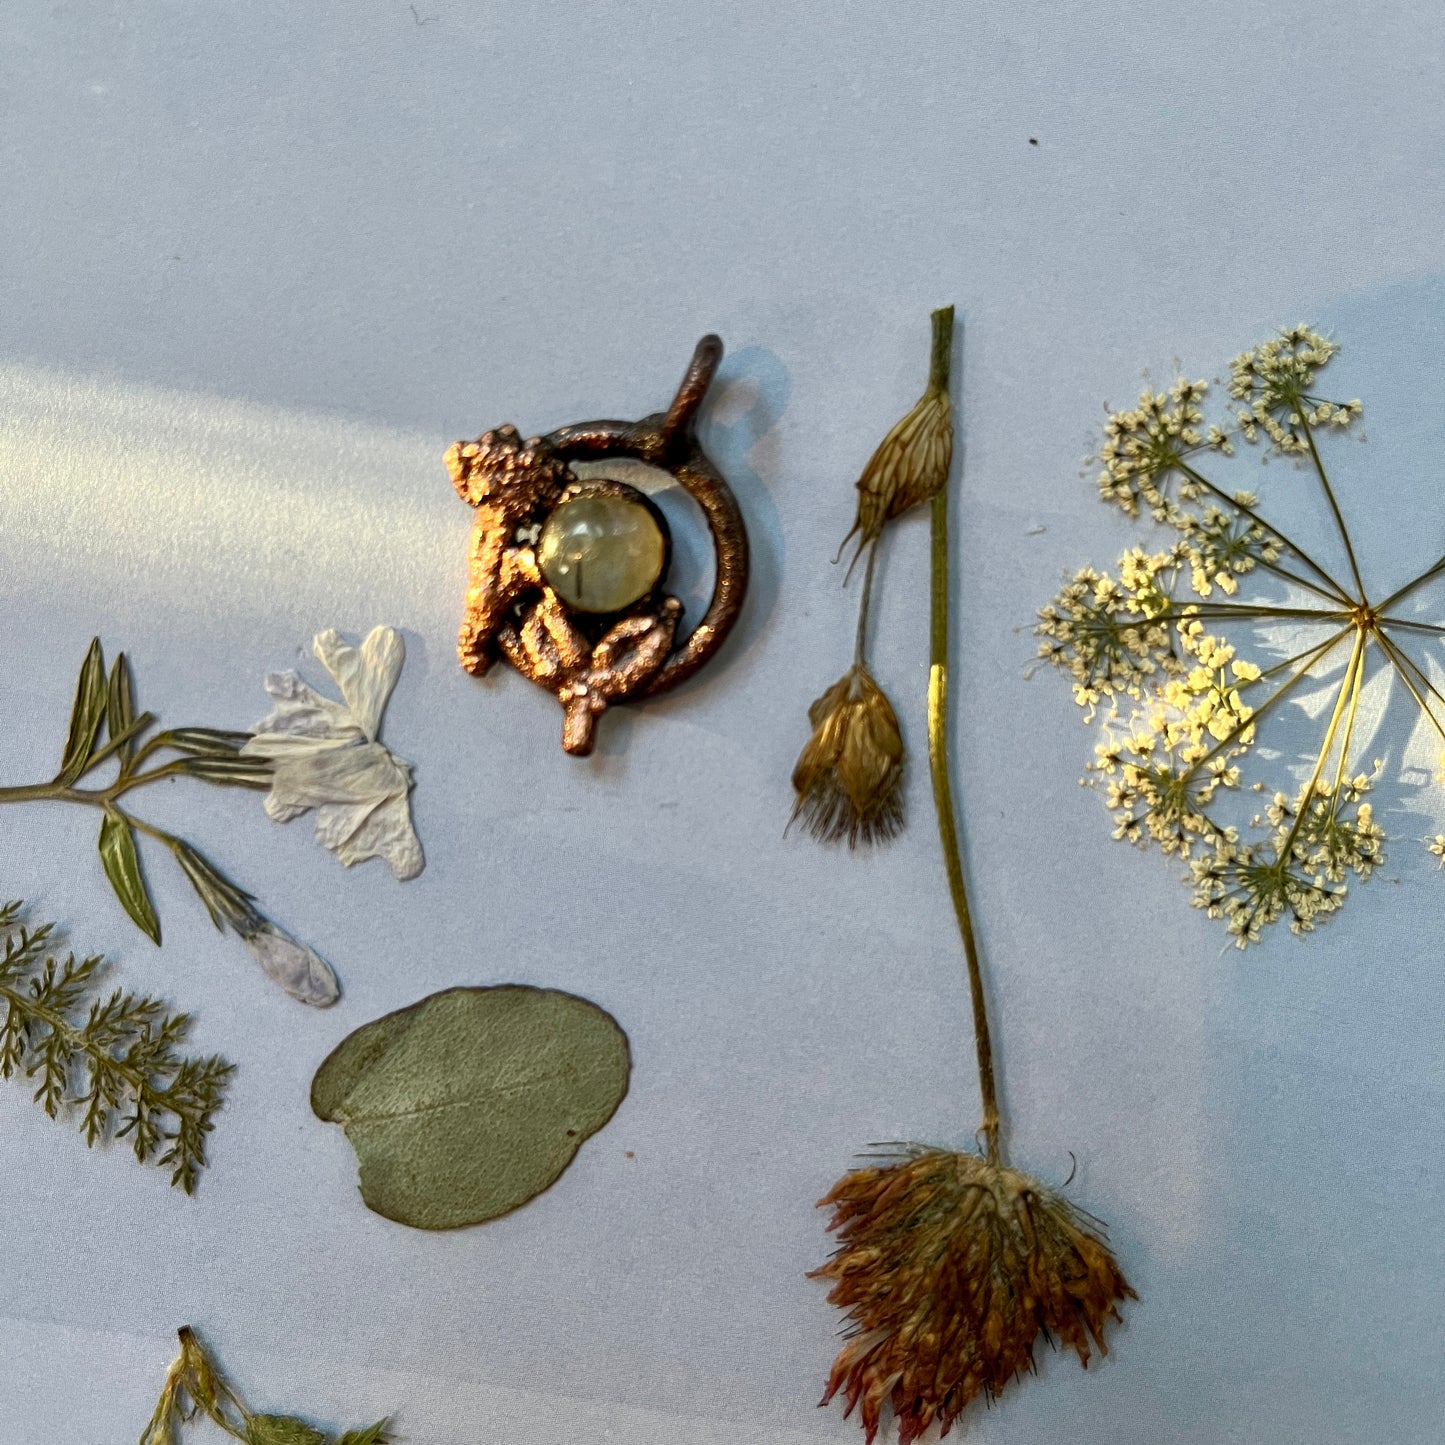 Wild Labradorite Flower Necklace